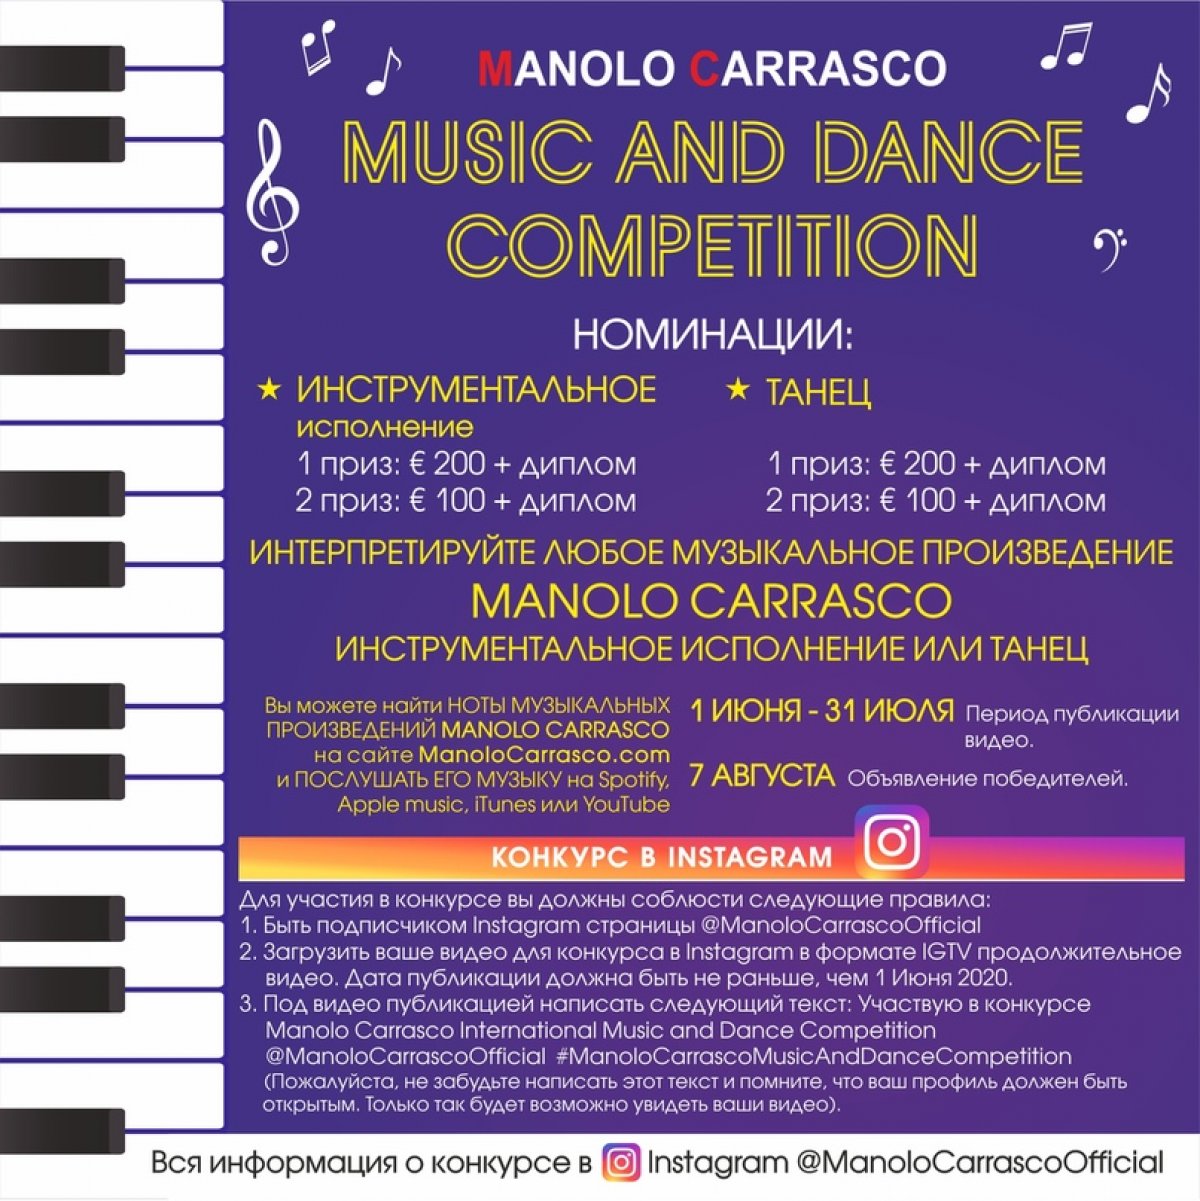 Приглашаем Вас принять участие в конкурсе Manolo Carrasco International Music and Dance Competition (Manolo Carrasco - Испания, пианист, композитор и дирижер оркестра)